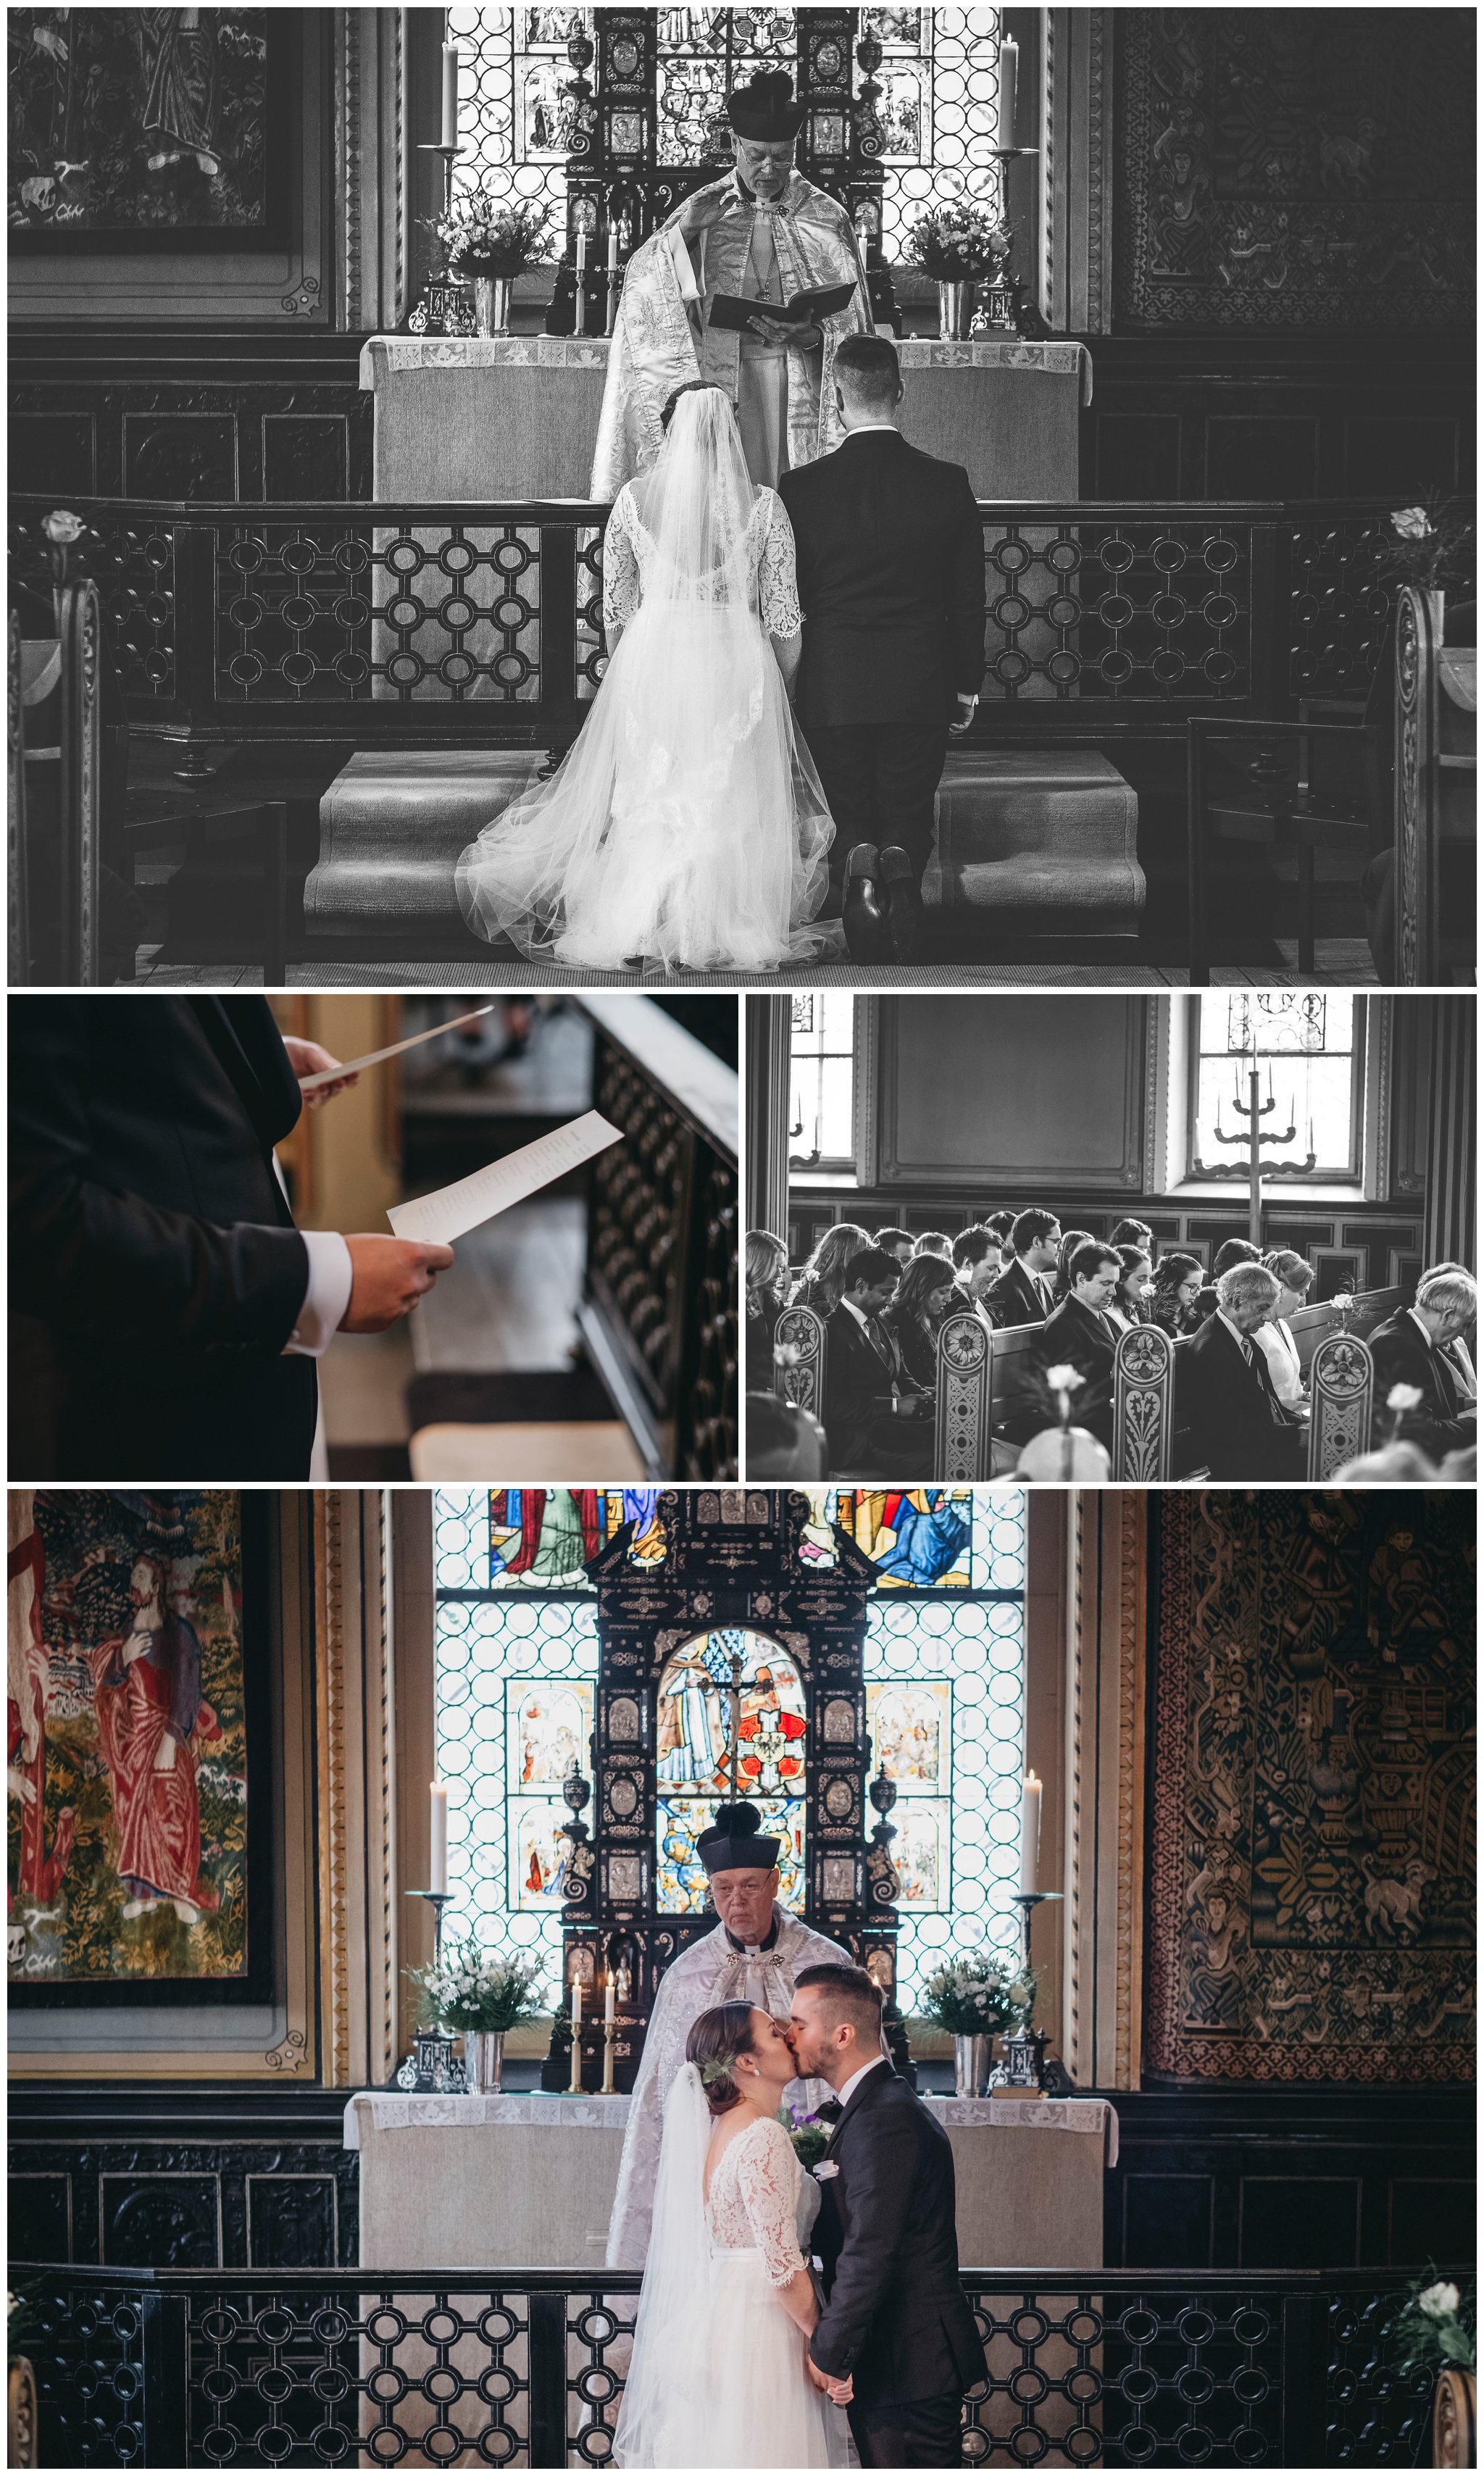 bröllopsfotograf stockholm, bröllopsbilder, borgerlig vigsel, pris bröllopsfotograf, bröllop i täby, bröllop i vaxholm, bröllop i Vallentuna, fotograf bröllop, bröllopsfotograf norrtälje